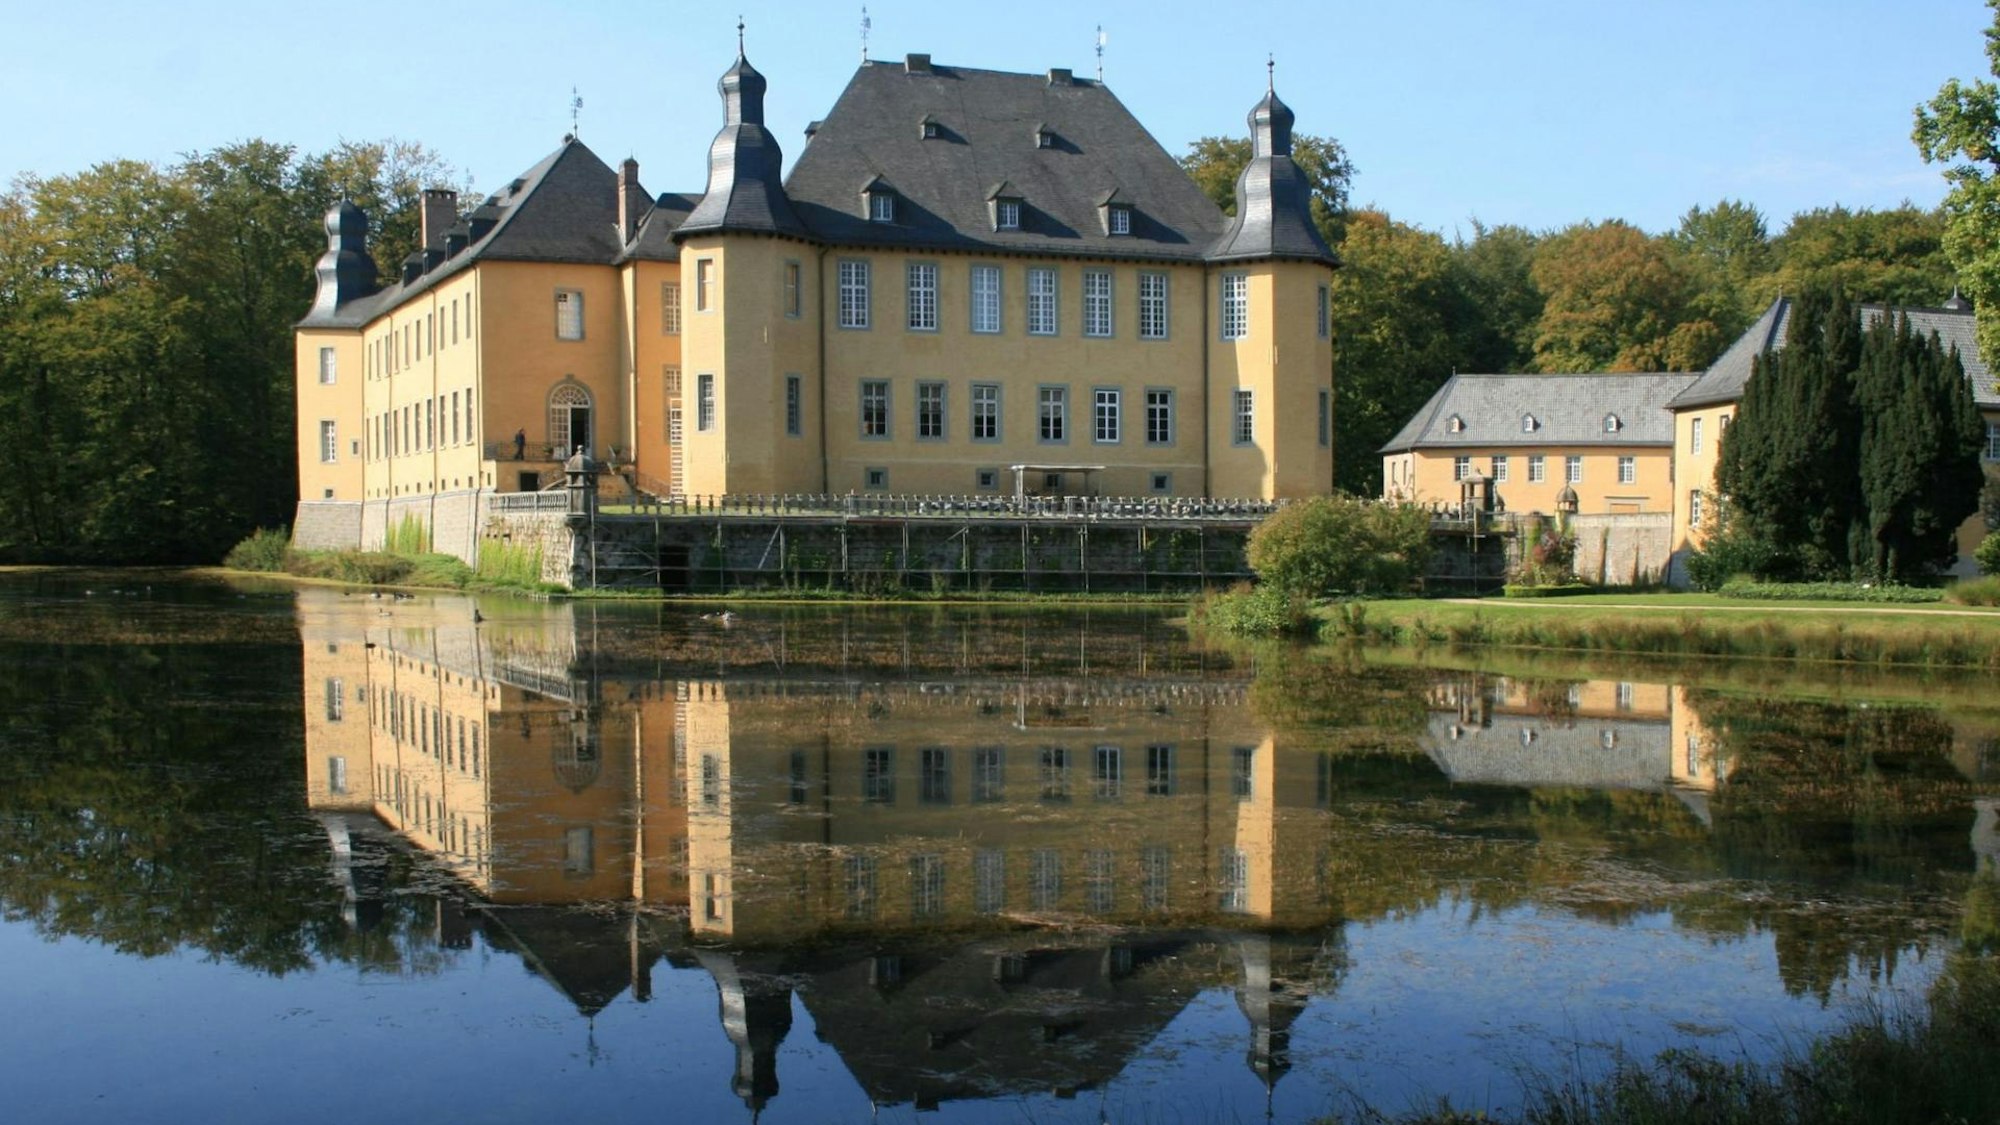 Wasserschloss Schloss Dyck spiegelt sich im See.